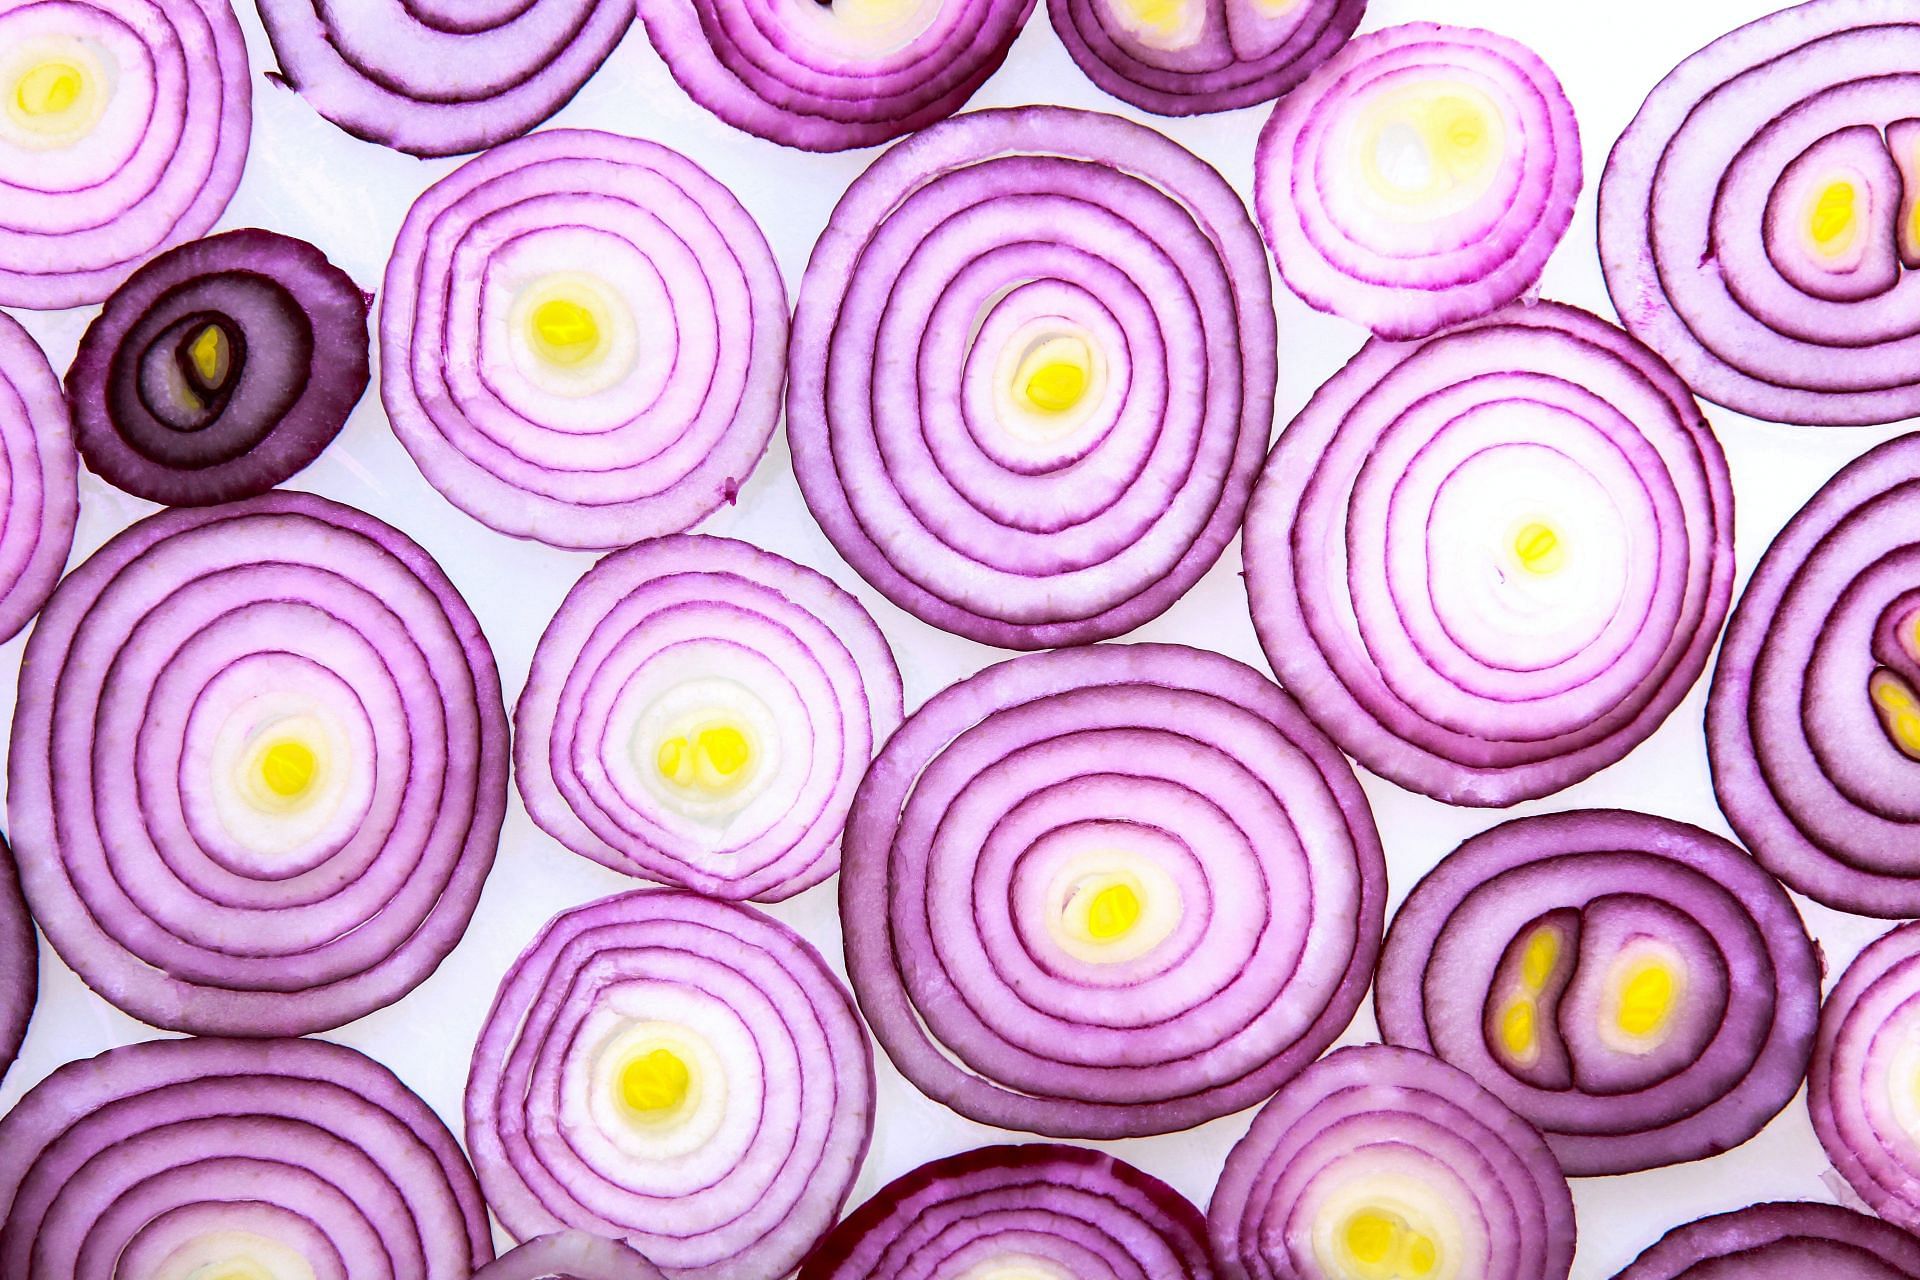 Onion (Image via Unsplash/Wilhelm)